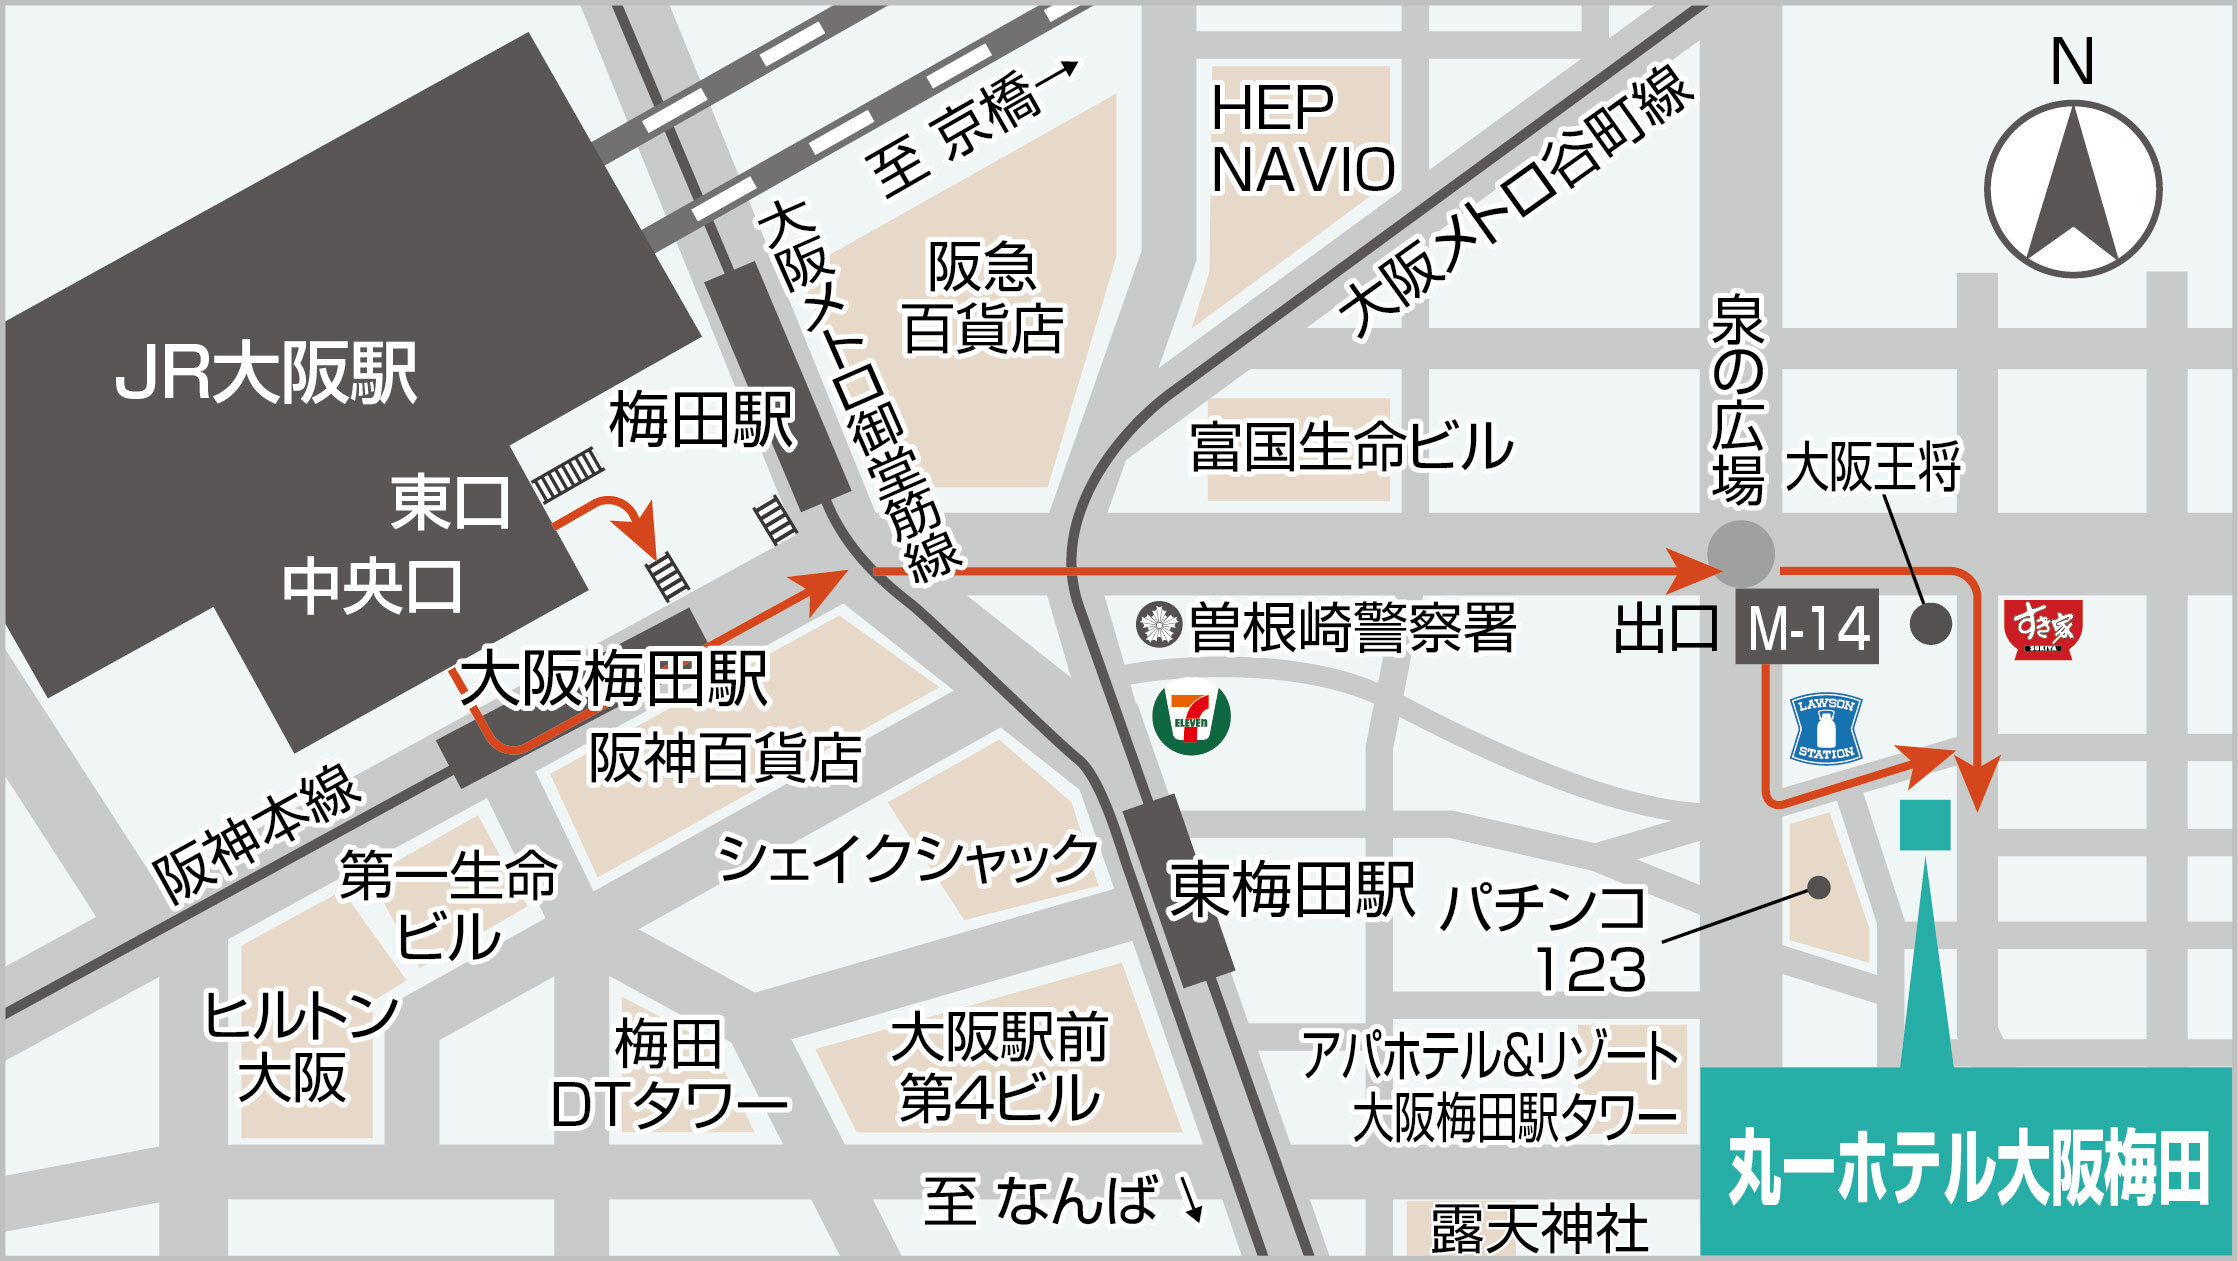 大阪駅から丸一ホテルまでの道順です。こちらの地図を参考にしてください。